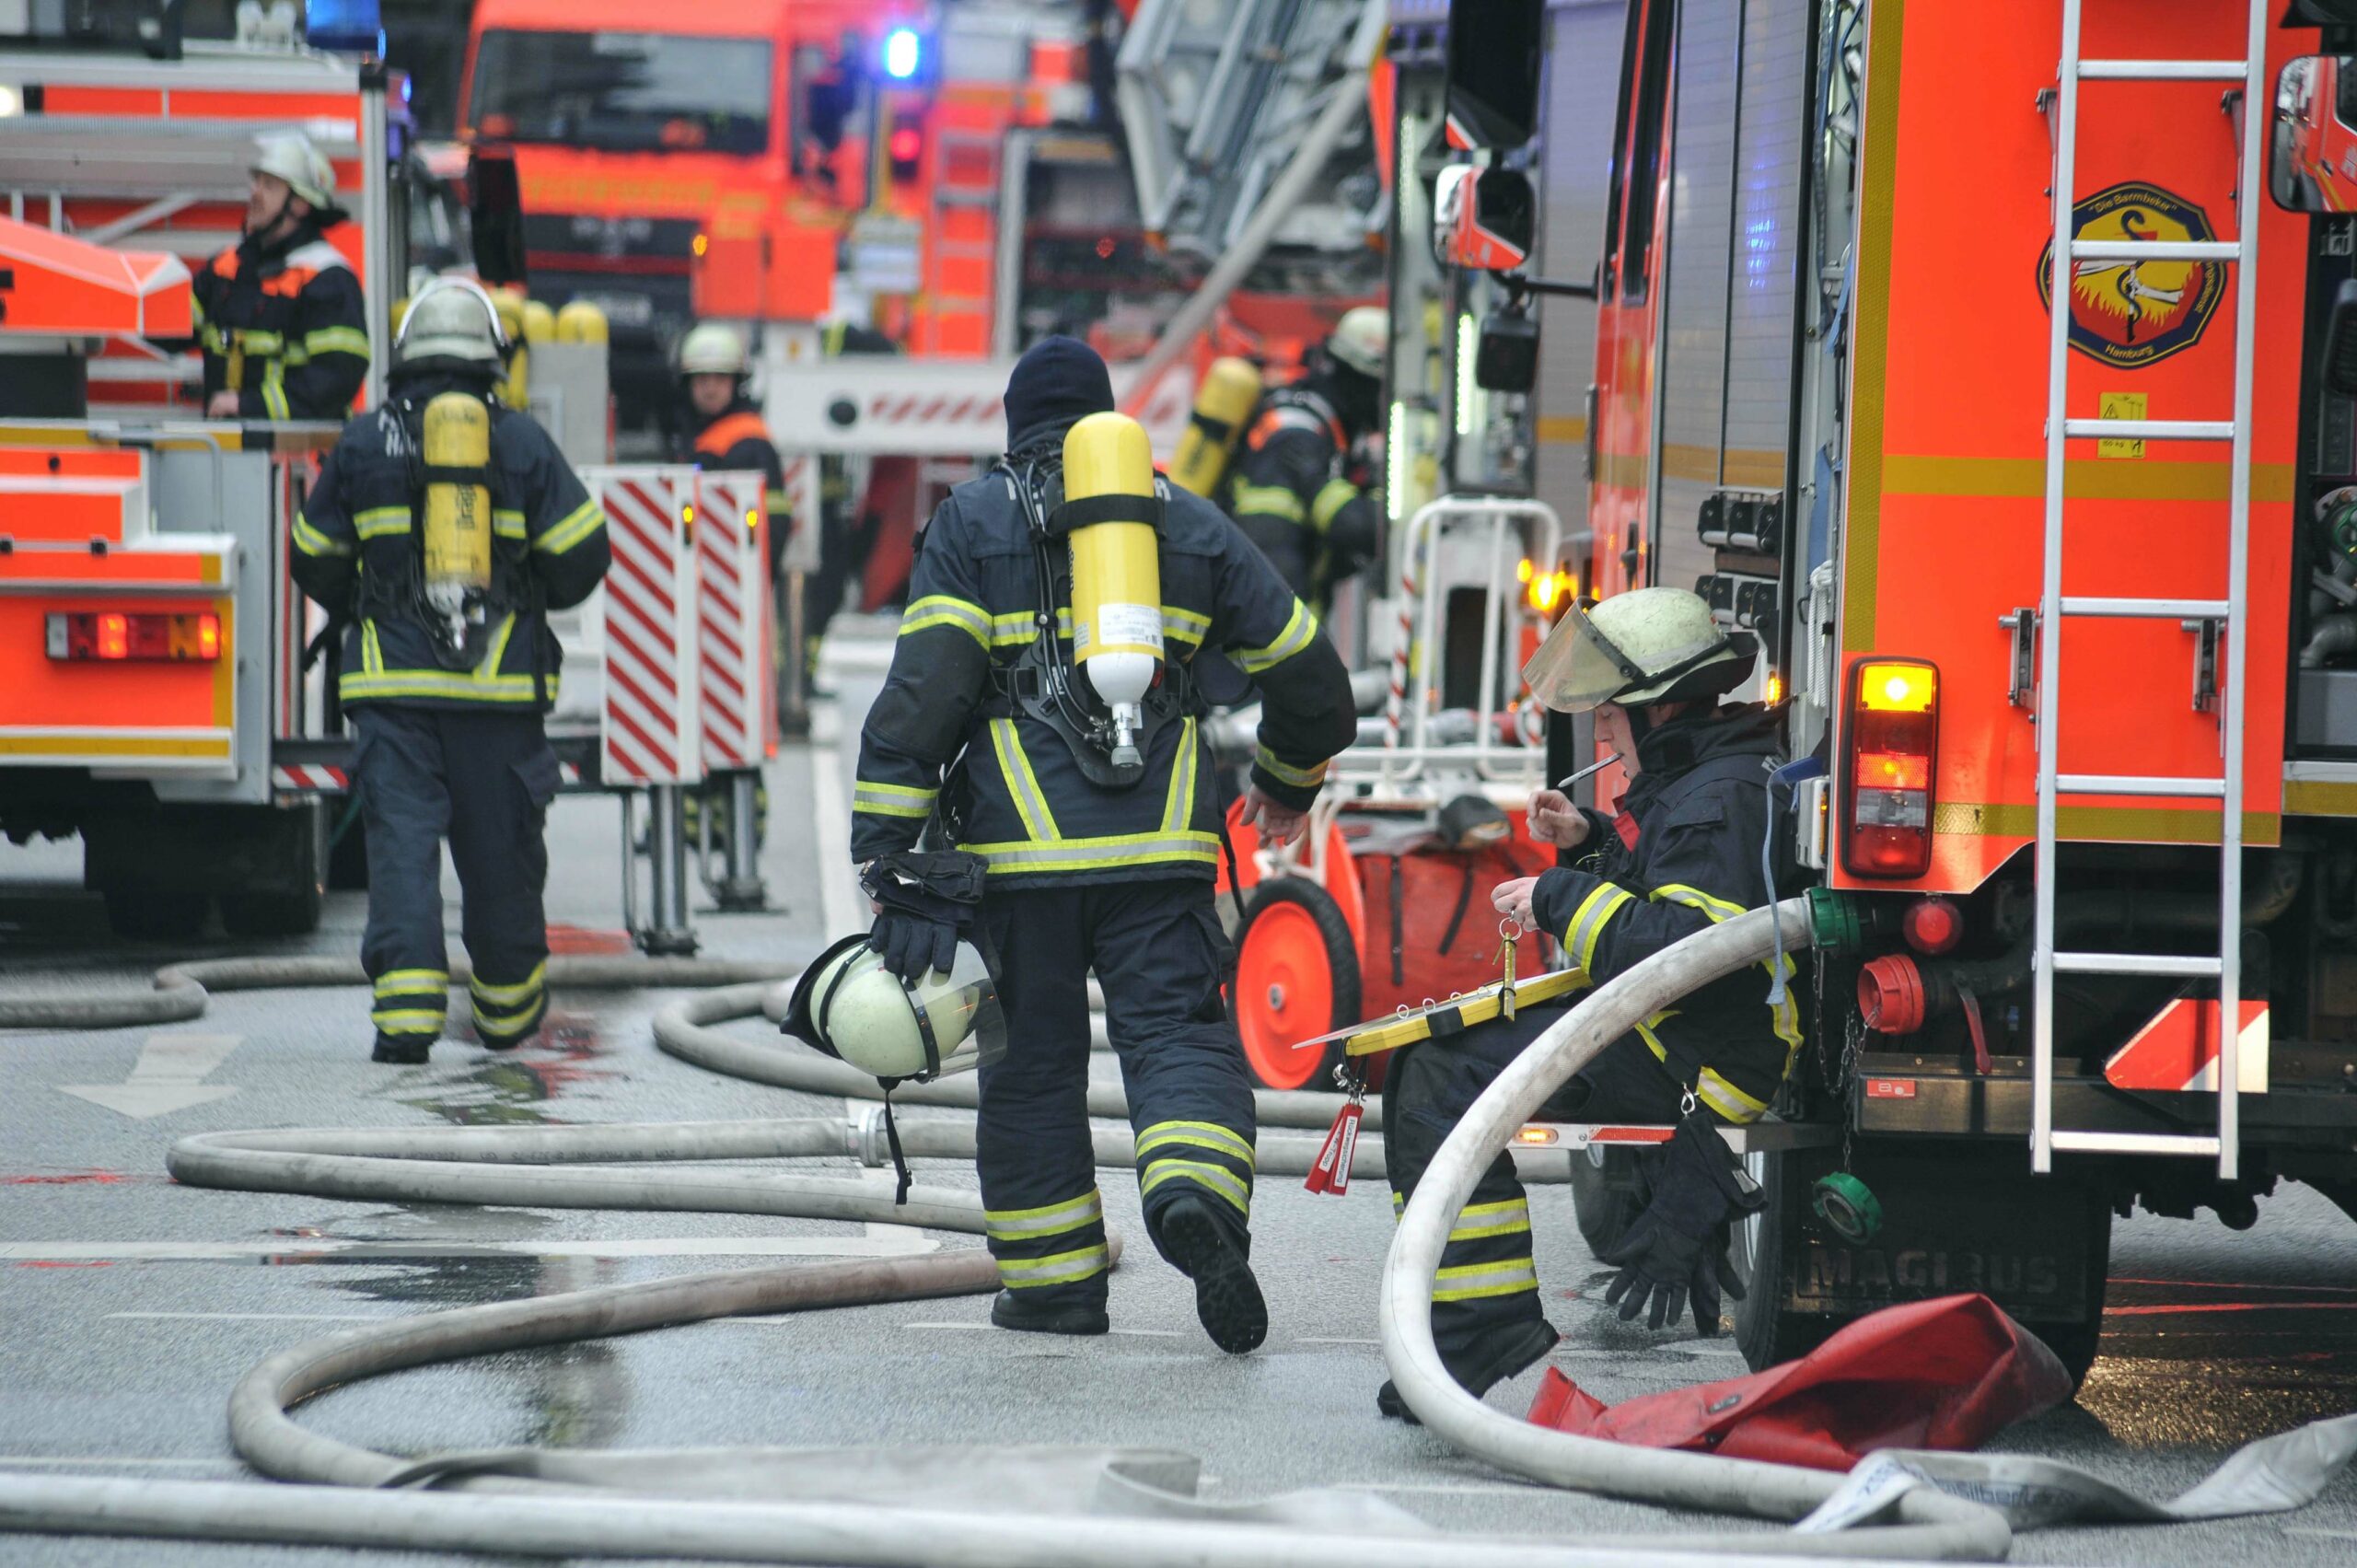 Flammen in Küche – Feuerwehr rettet Bewohner